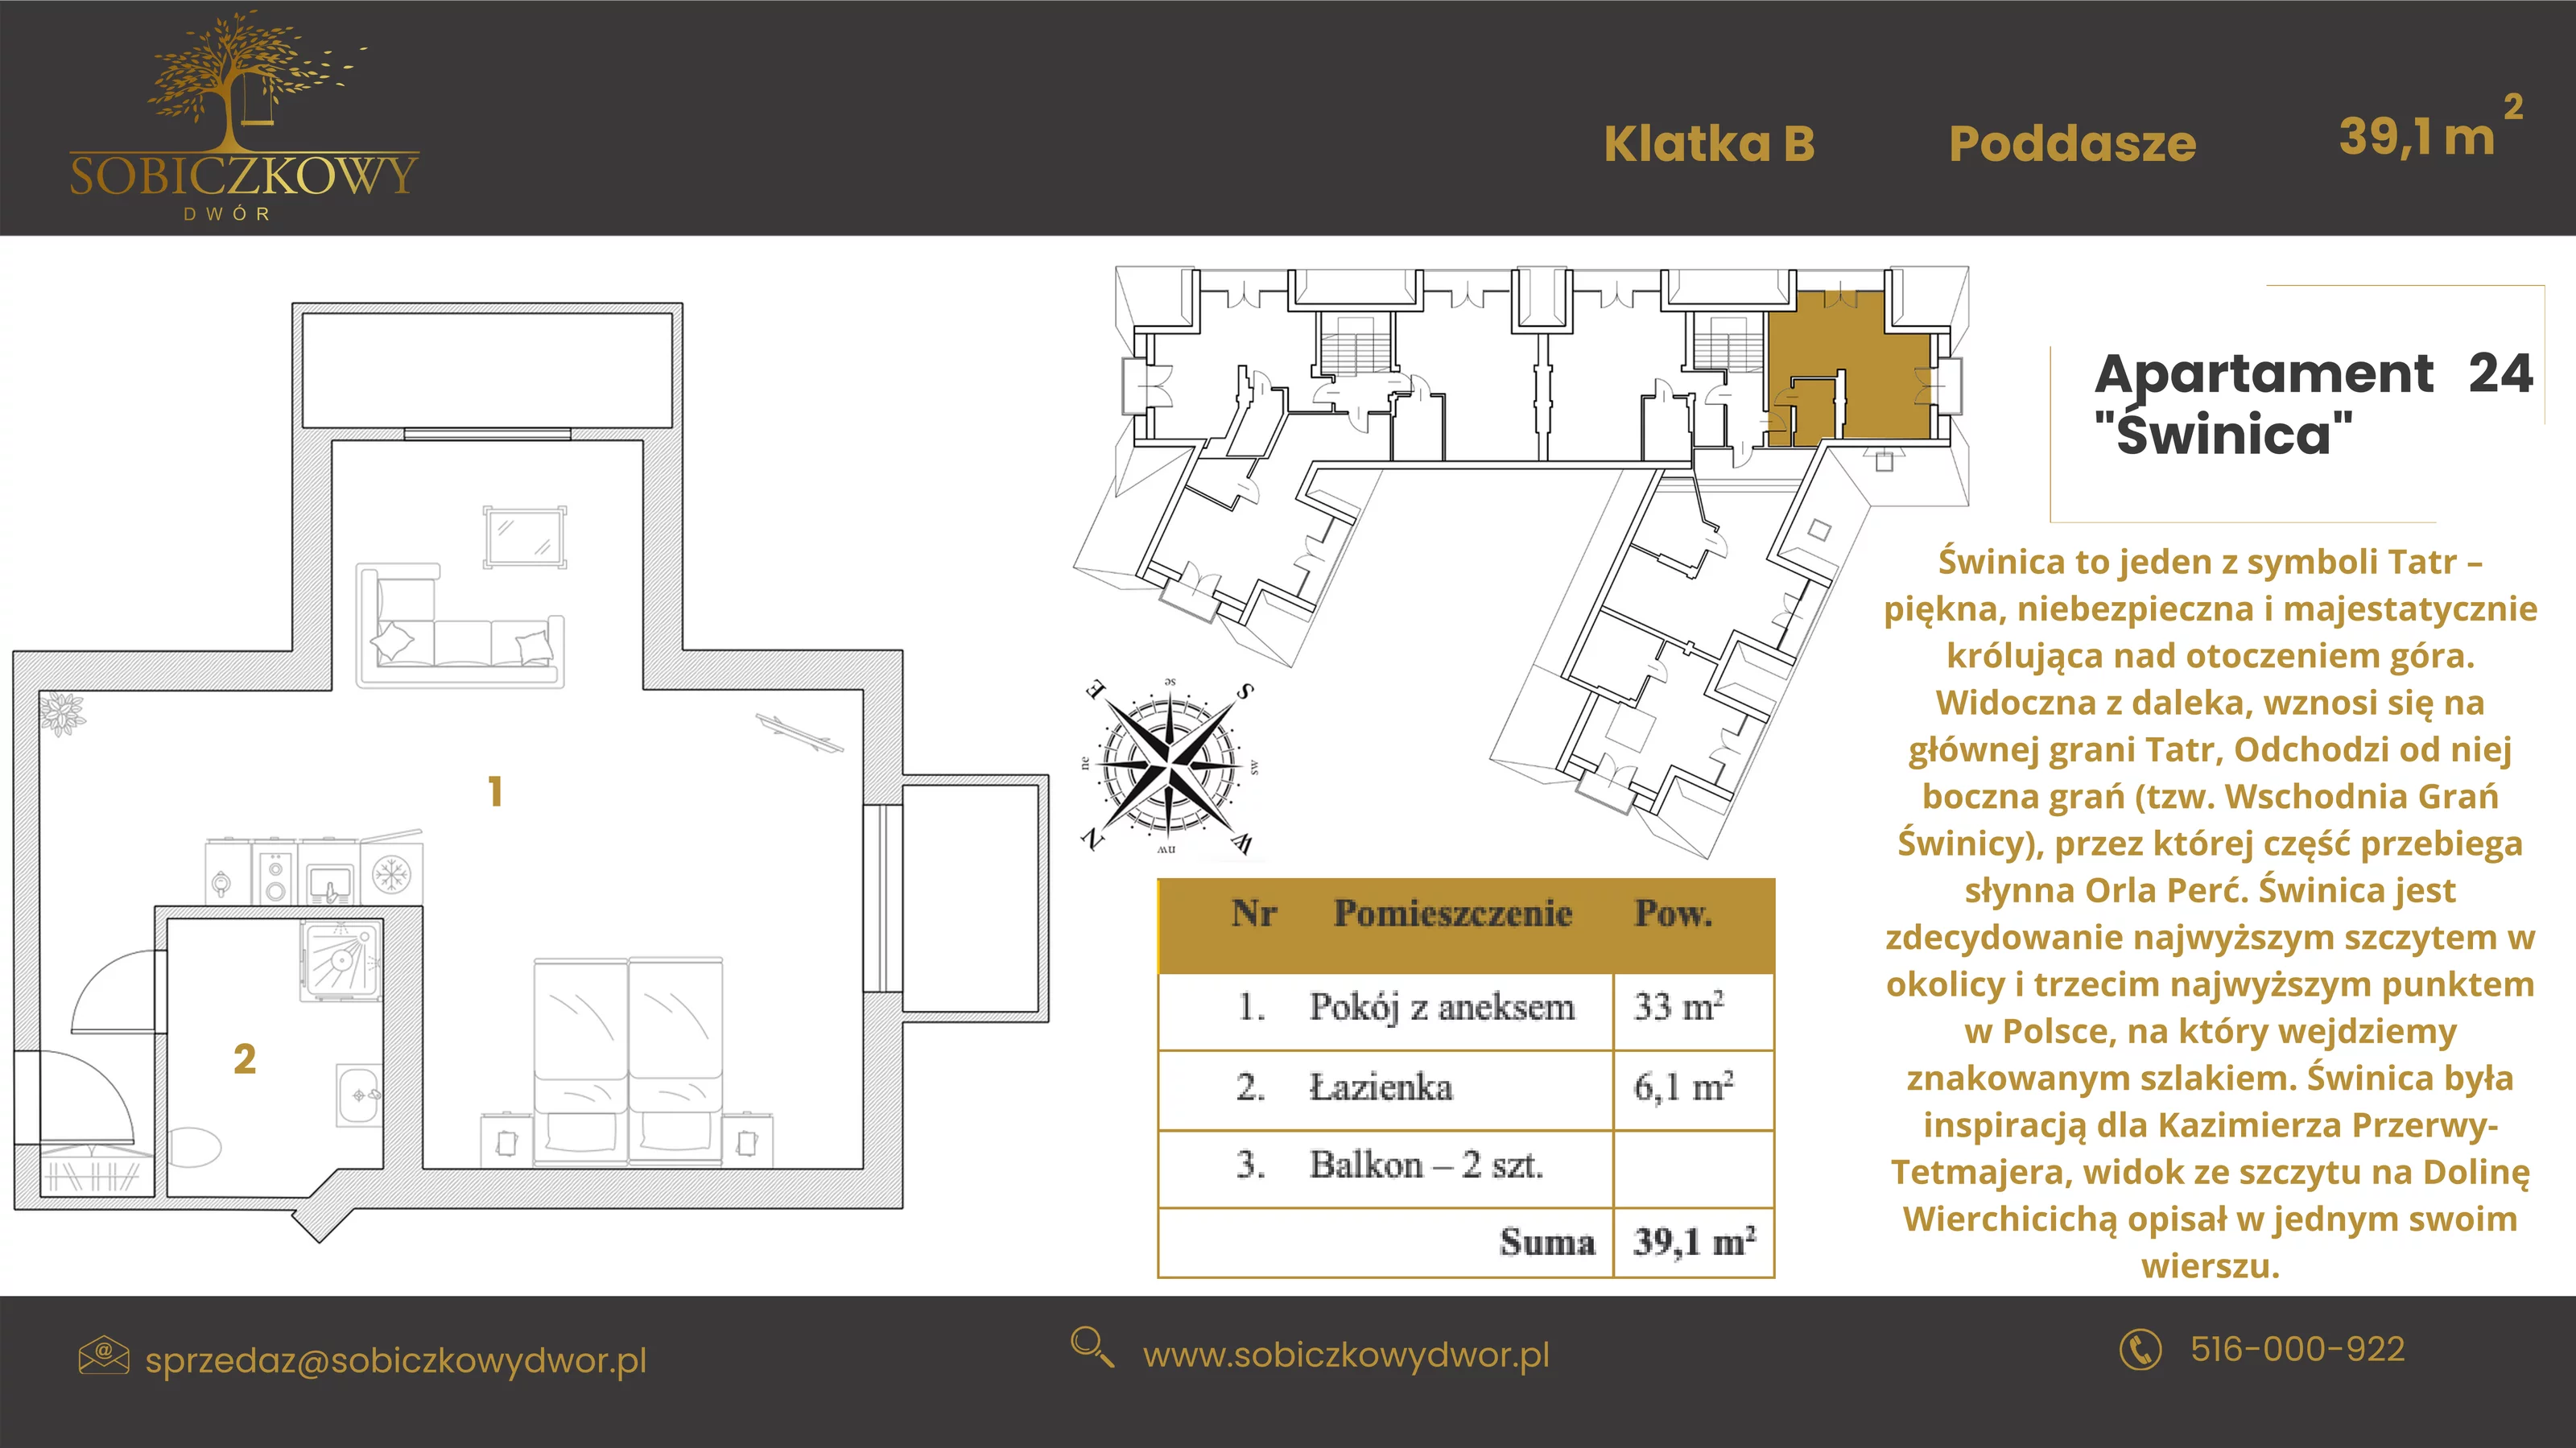 Apartament 45,50 m², piętro 2, oferta nr 24 "Świnica", Sobiczkowy Dwór, Kościelisko, ul. Sobiczkowa Bór 1